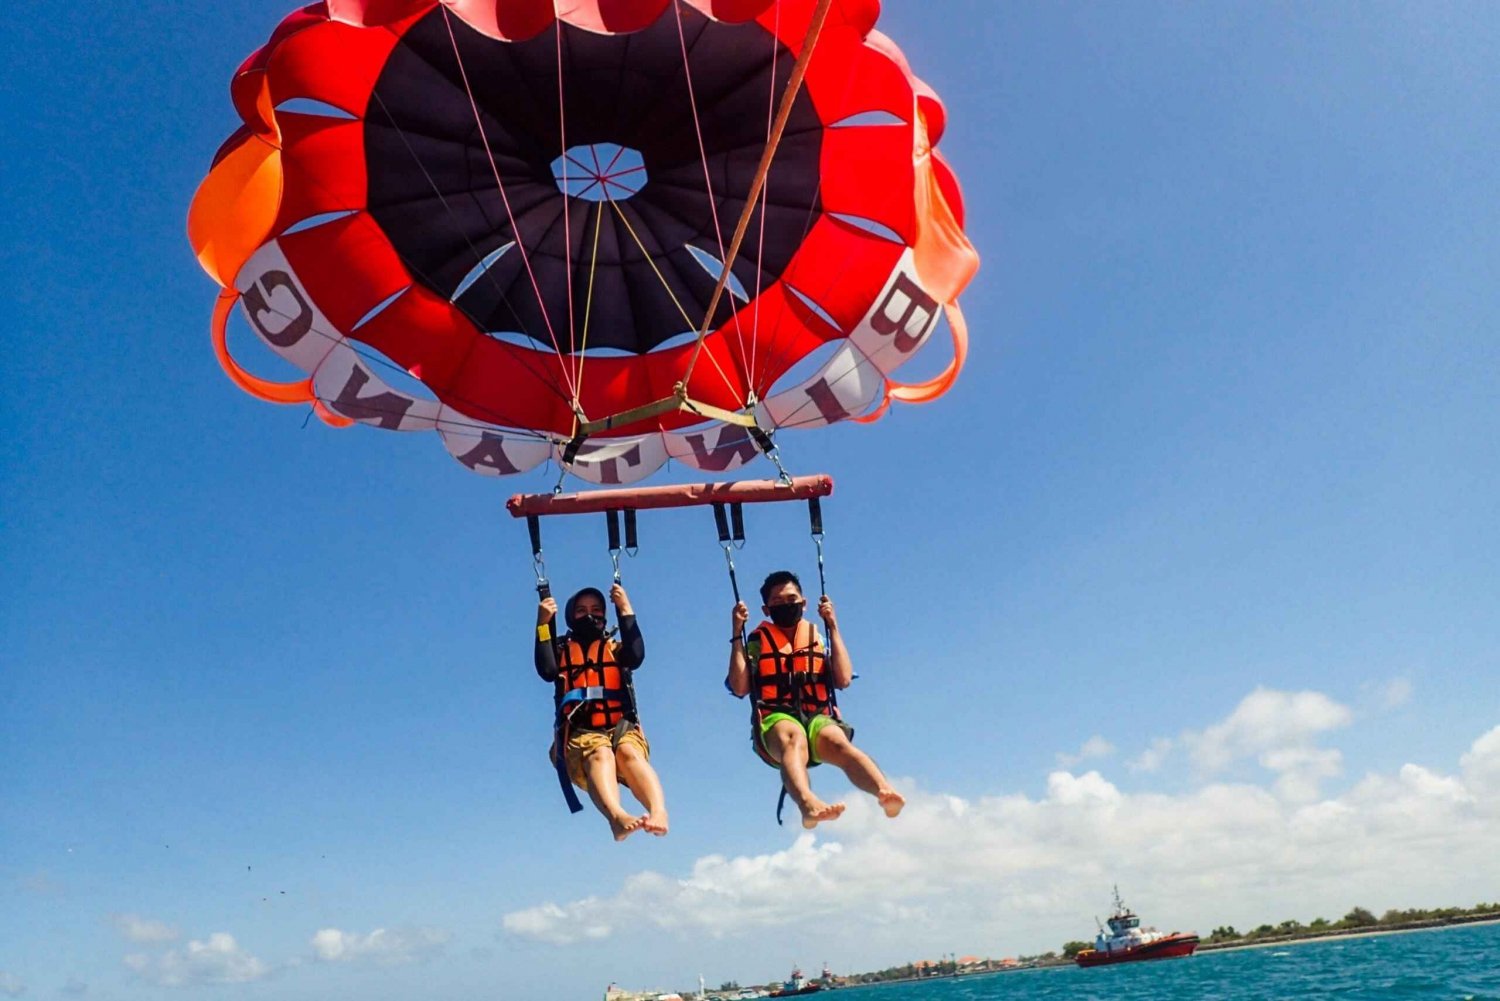 Bali : Parachute ascensionnel, jet ski, bateau banane et plages du sud